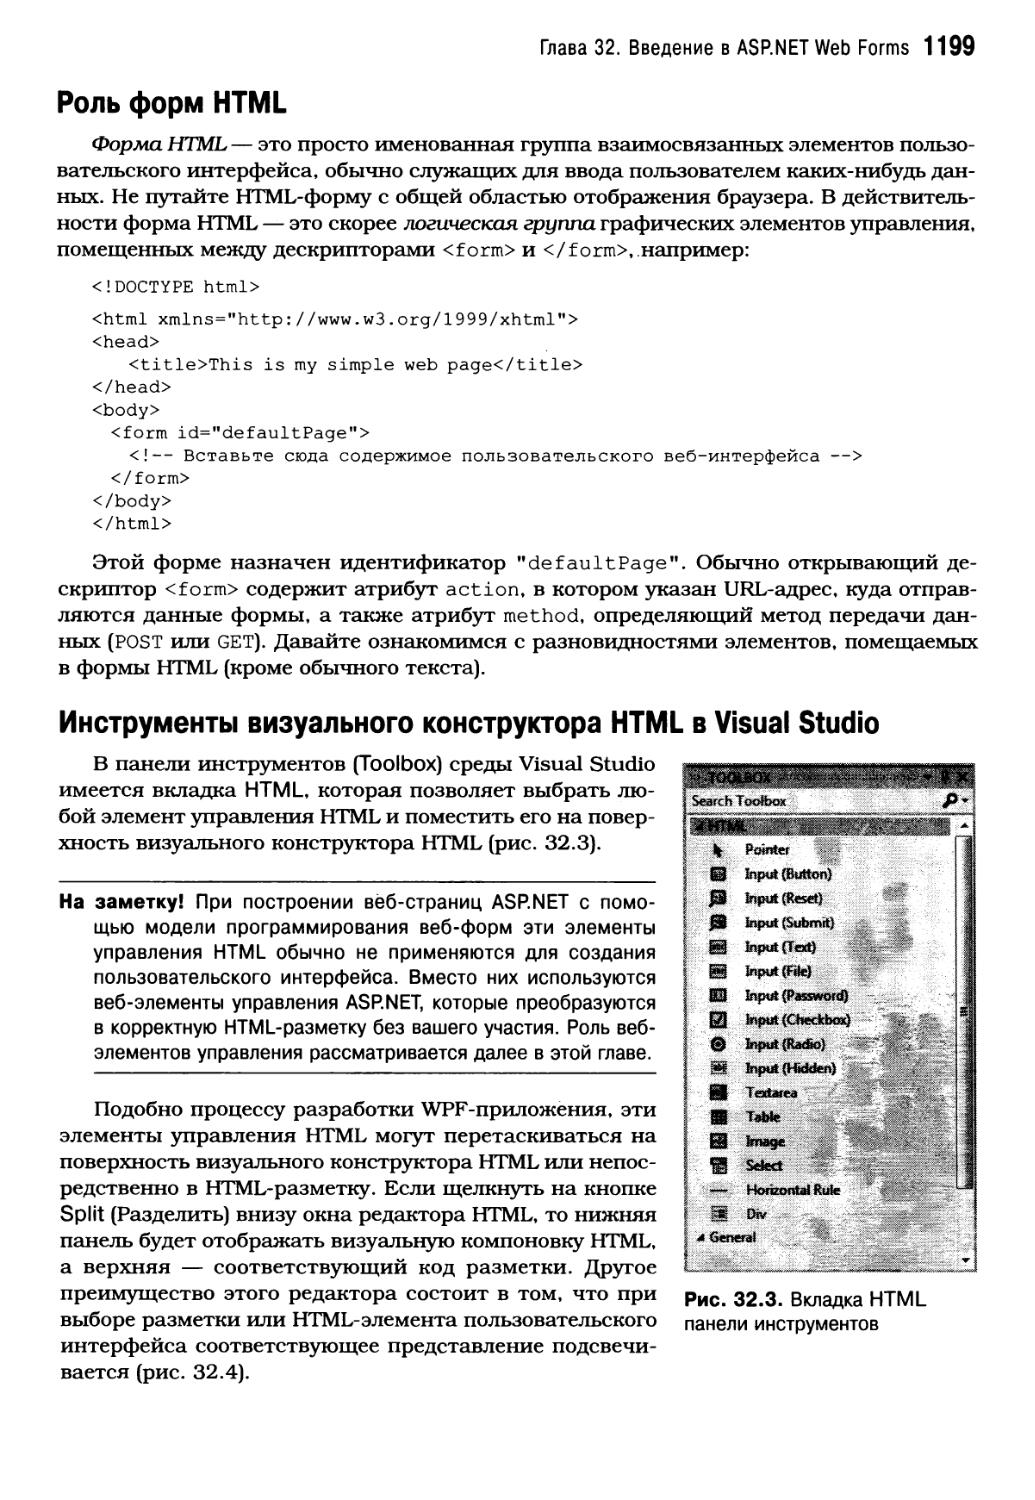 Роль форм HTML
Инструменты визуального конструктора HTML в Visual Studio